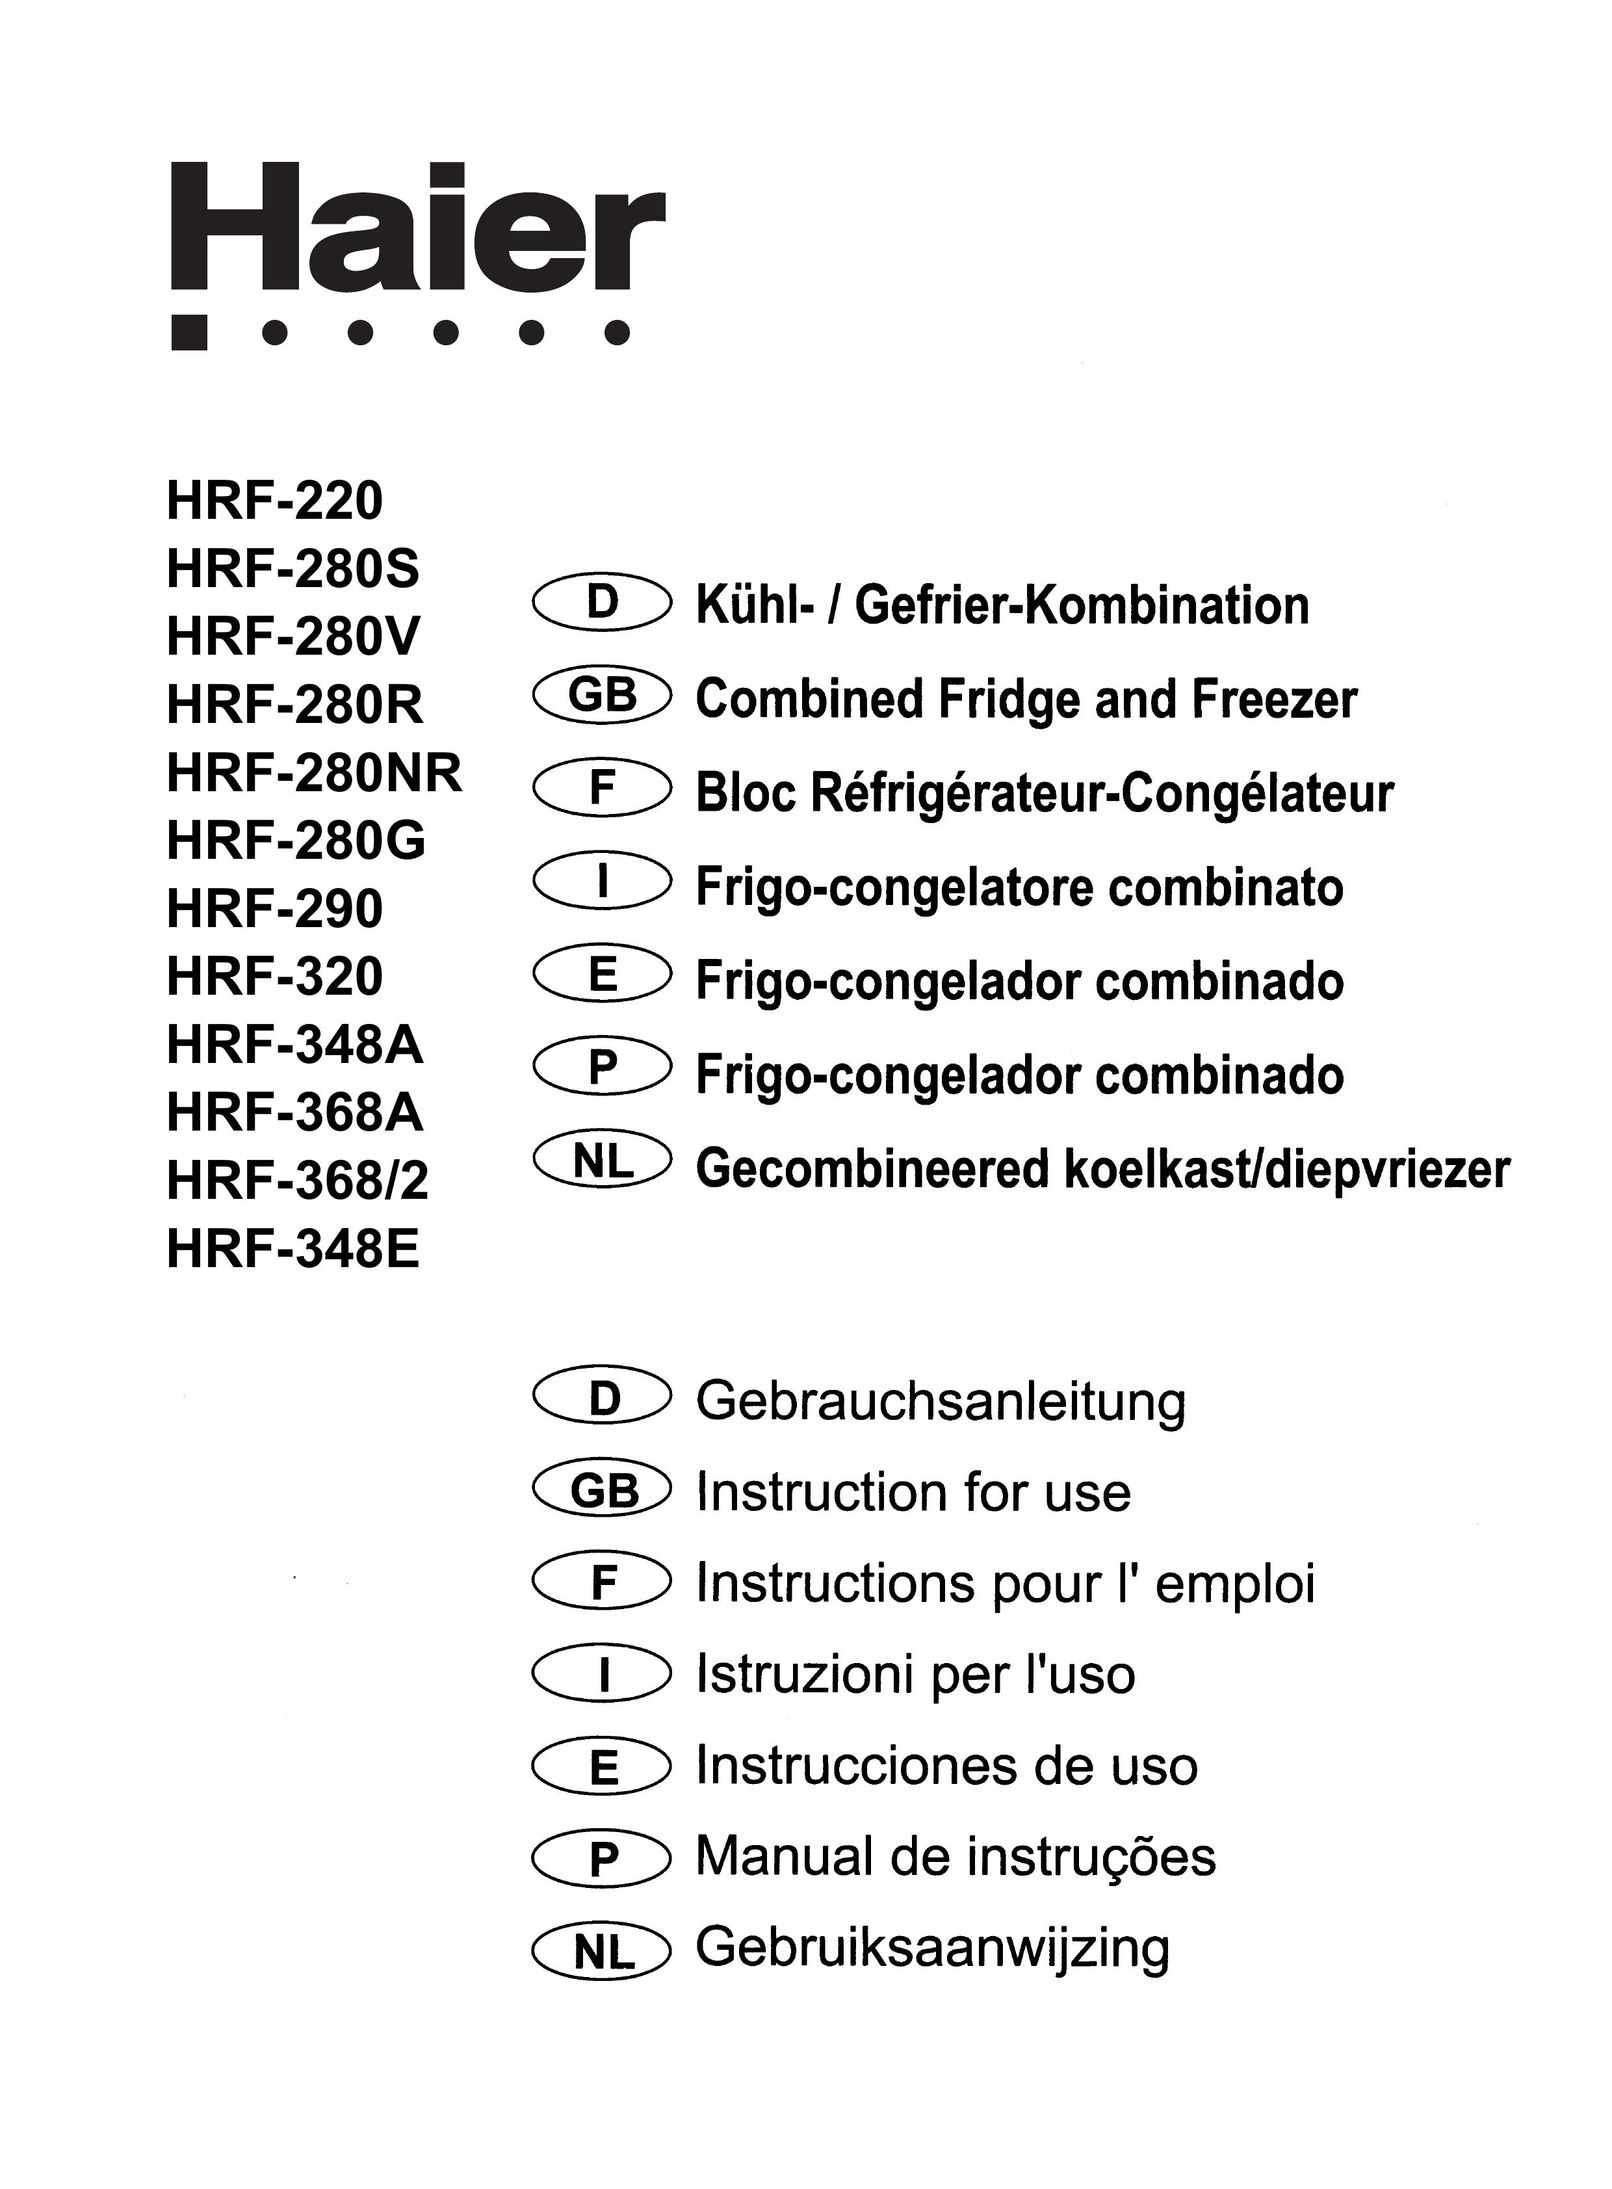 Haier HRF-368A Saw User Manual